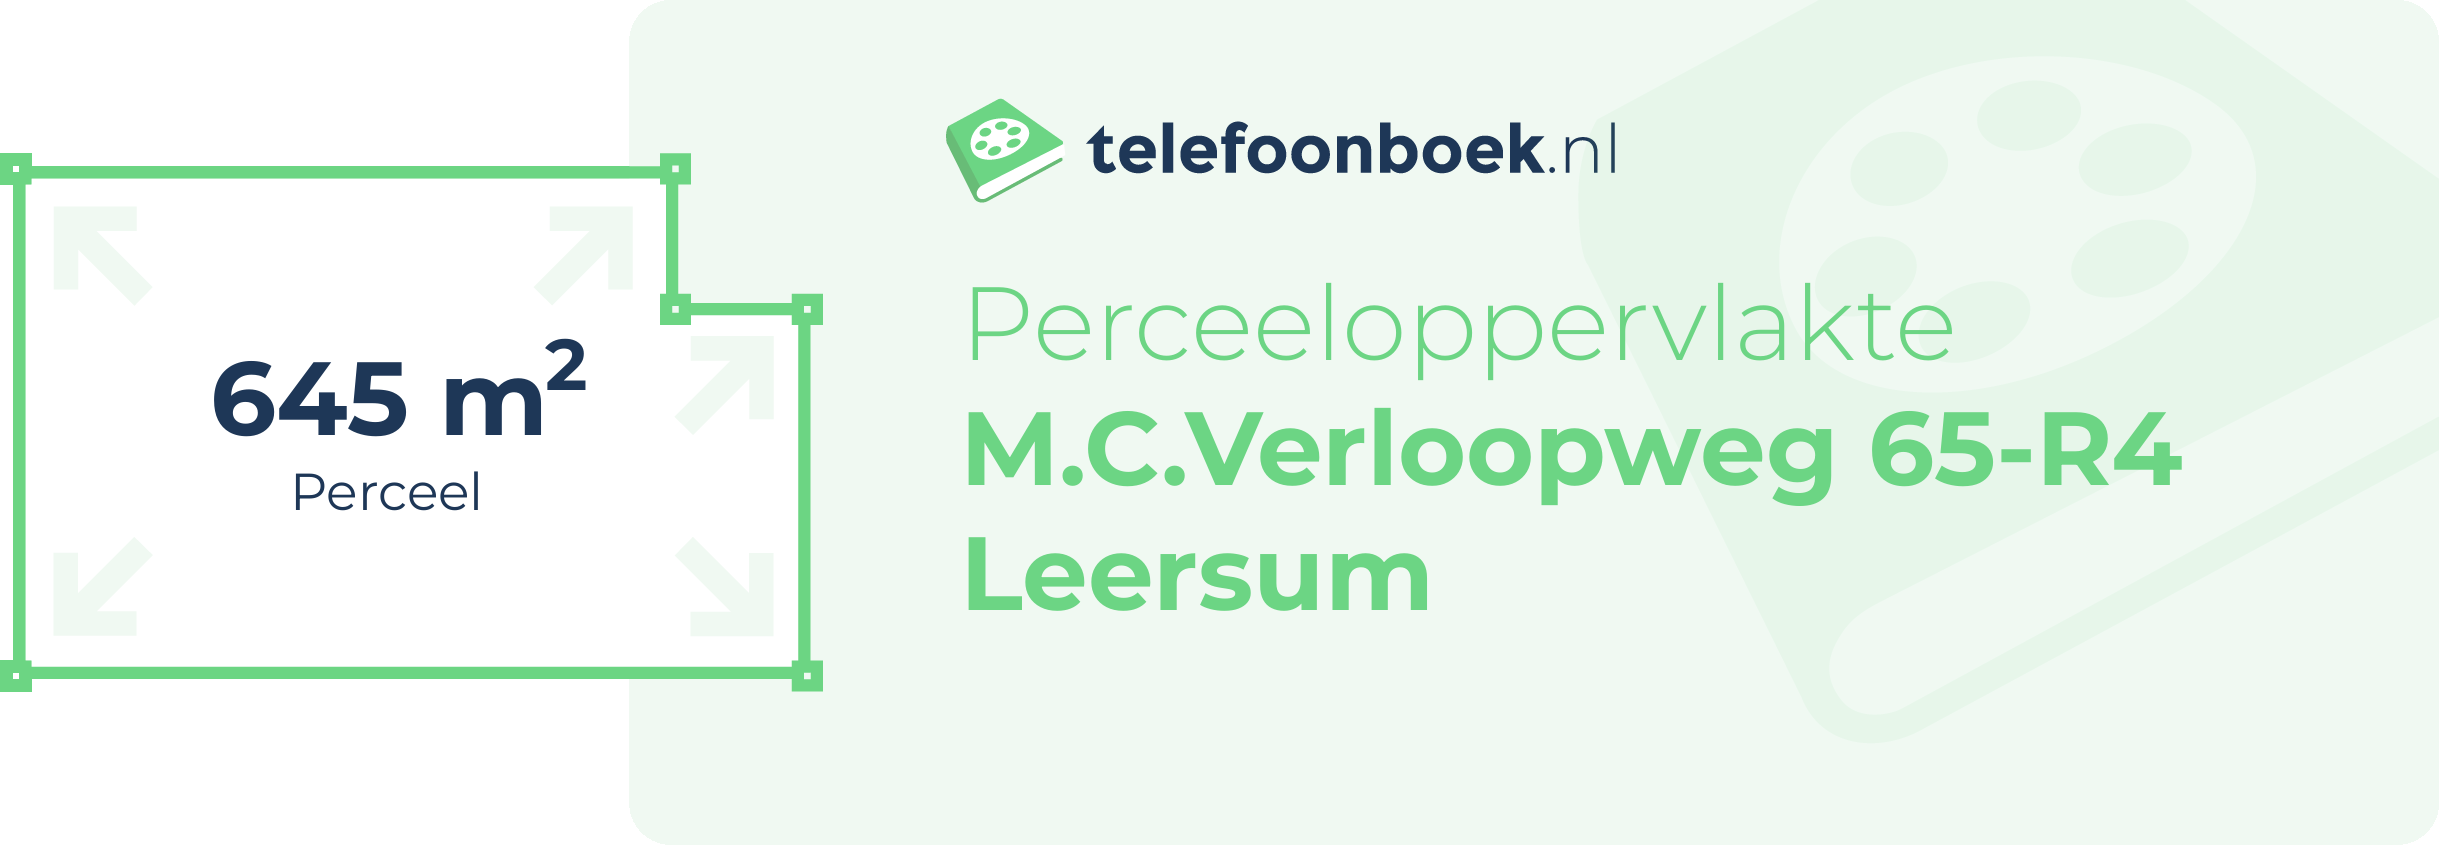 Perceeloppervlakte M.C.Verloopweg 65-R4 Leersum